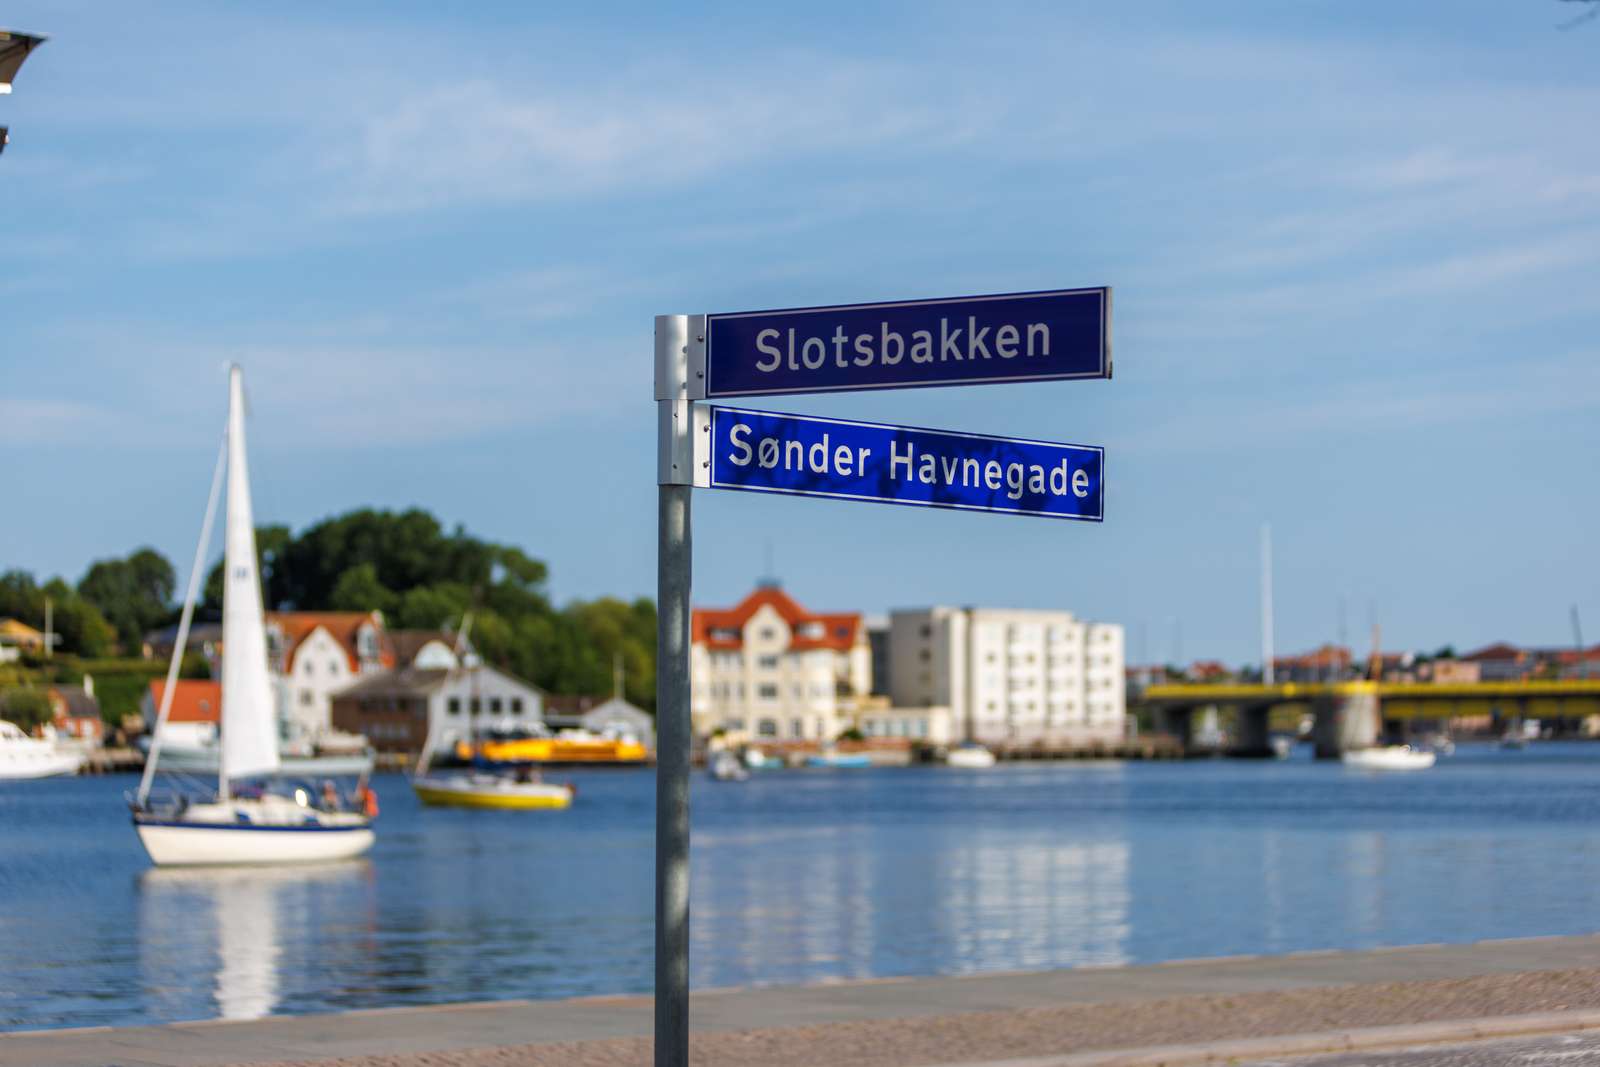 Slotsbakken Sønder Havnegade